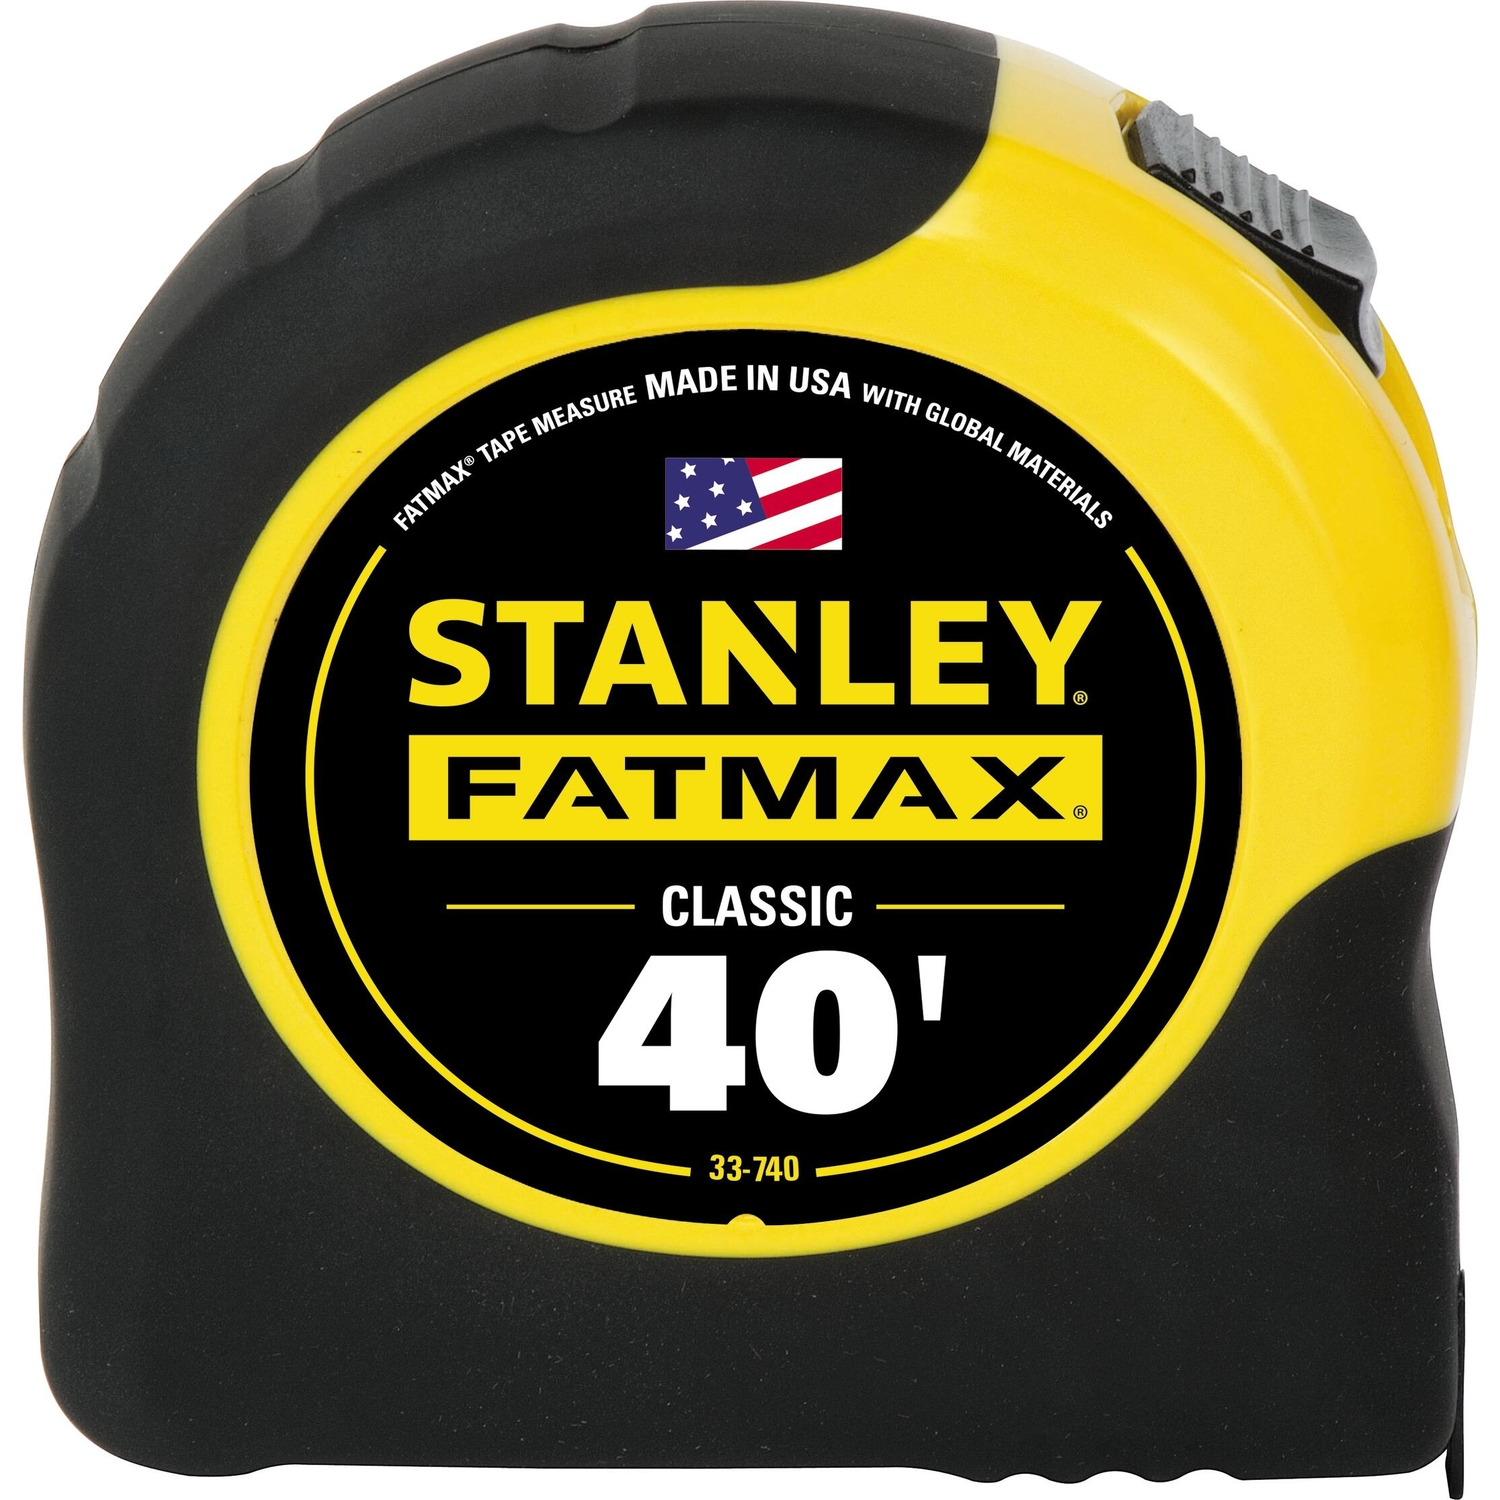 Stanley 100 ft. L X 0.38 in. W Long Tape Measure 1 pk - Ace Hardware